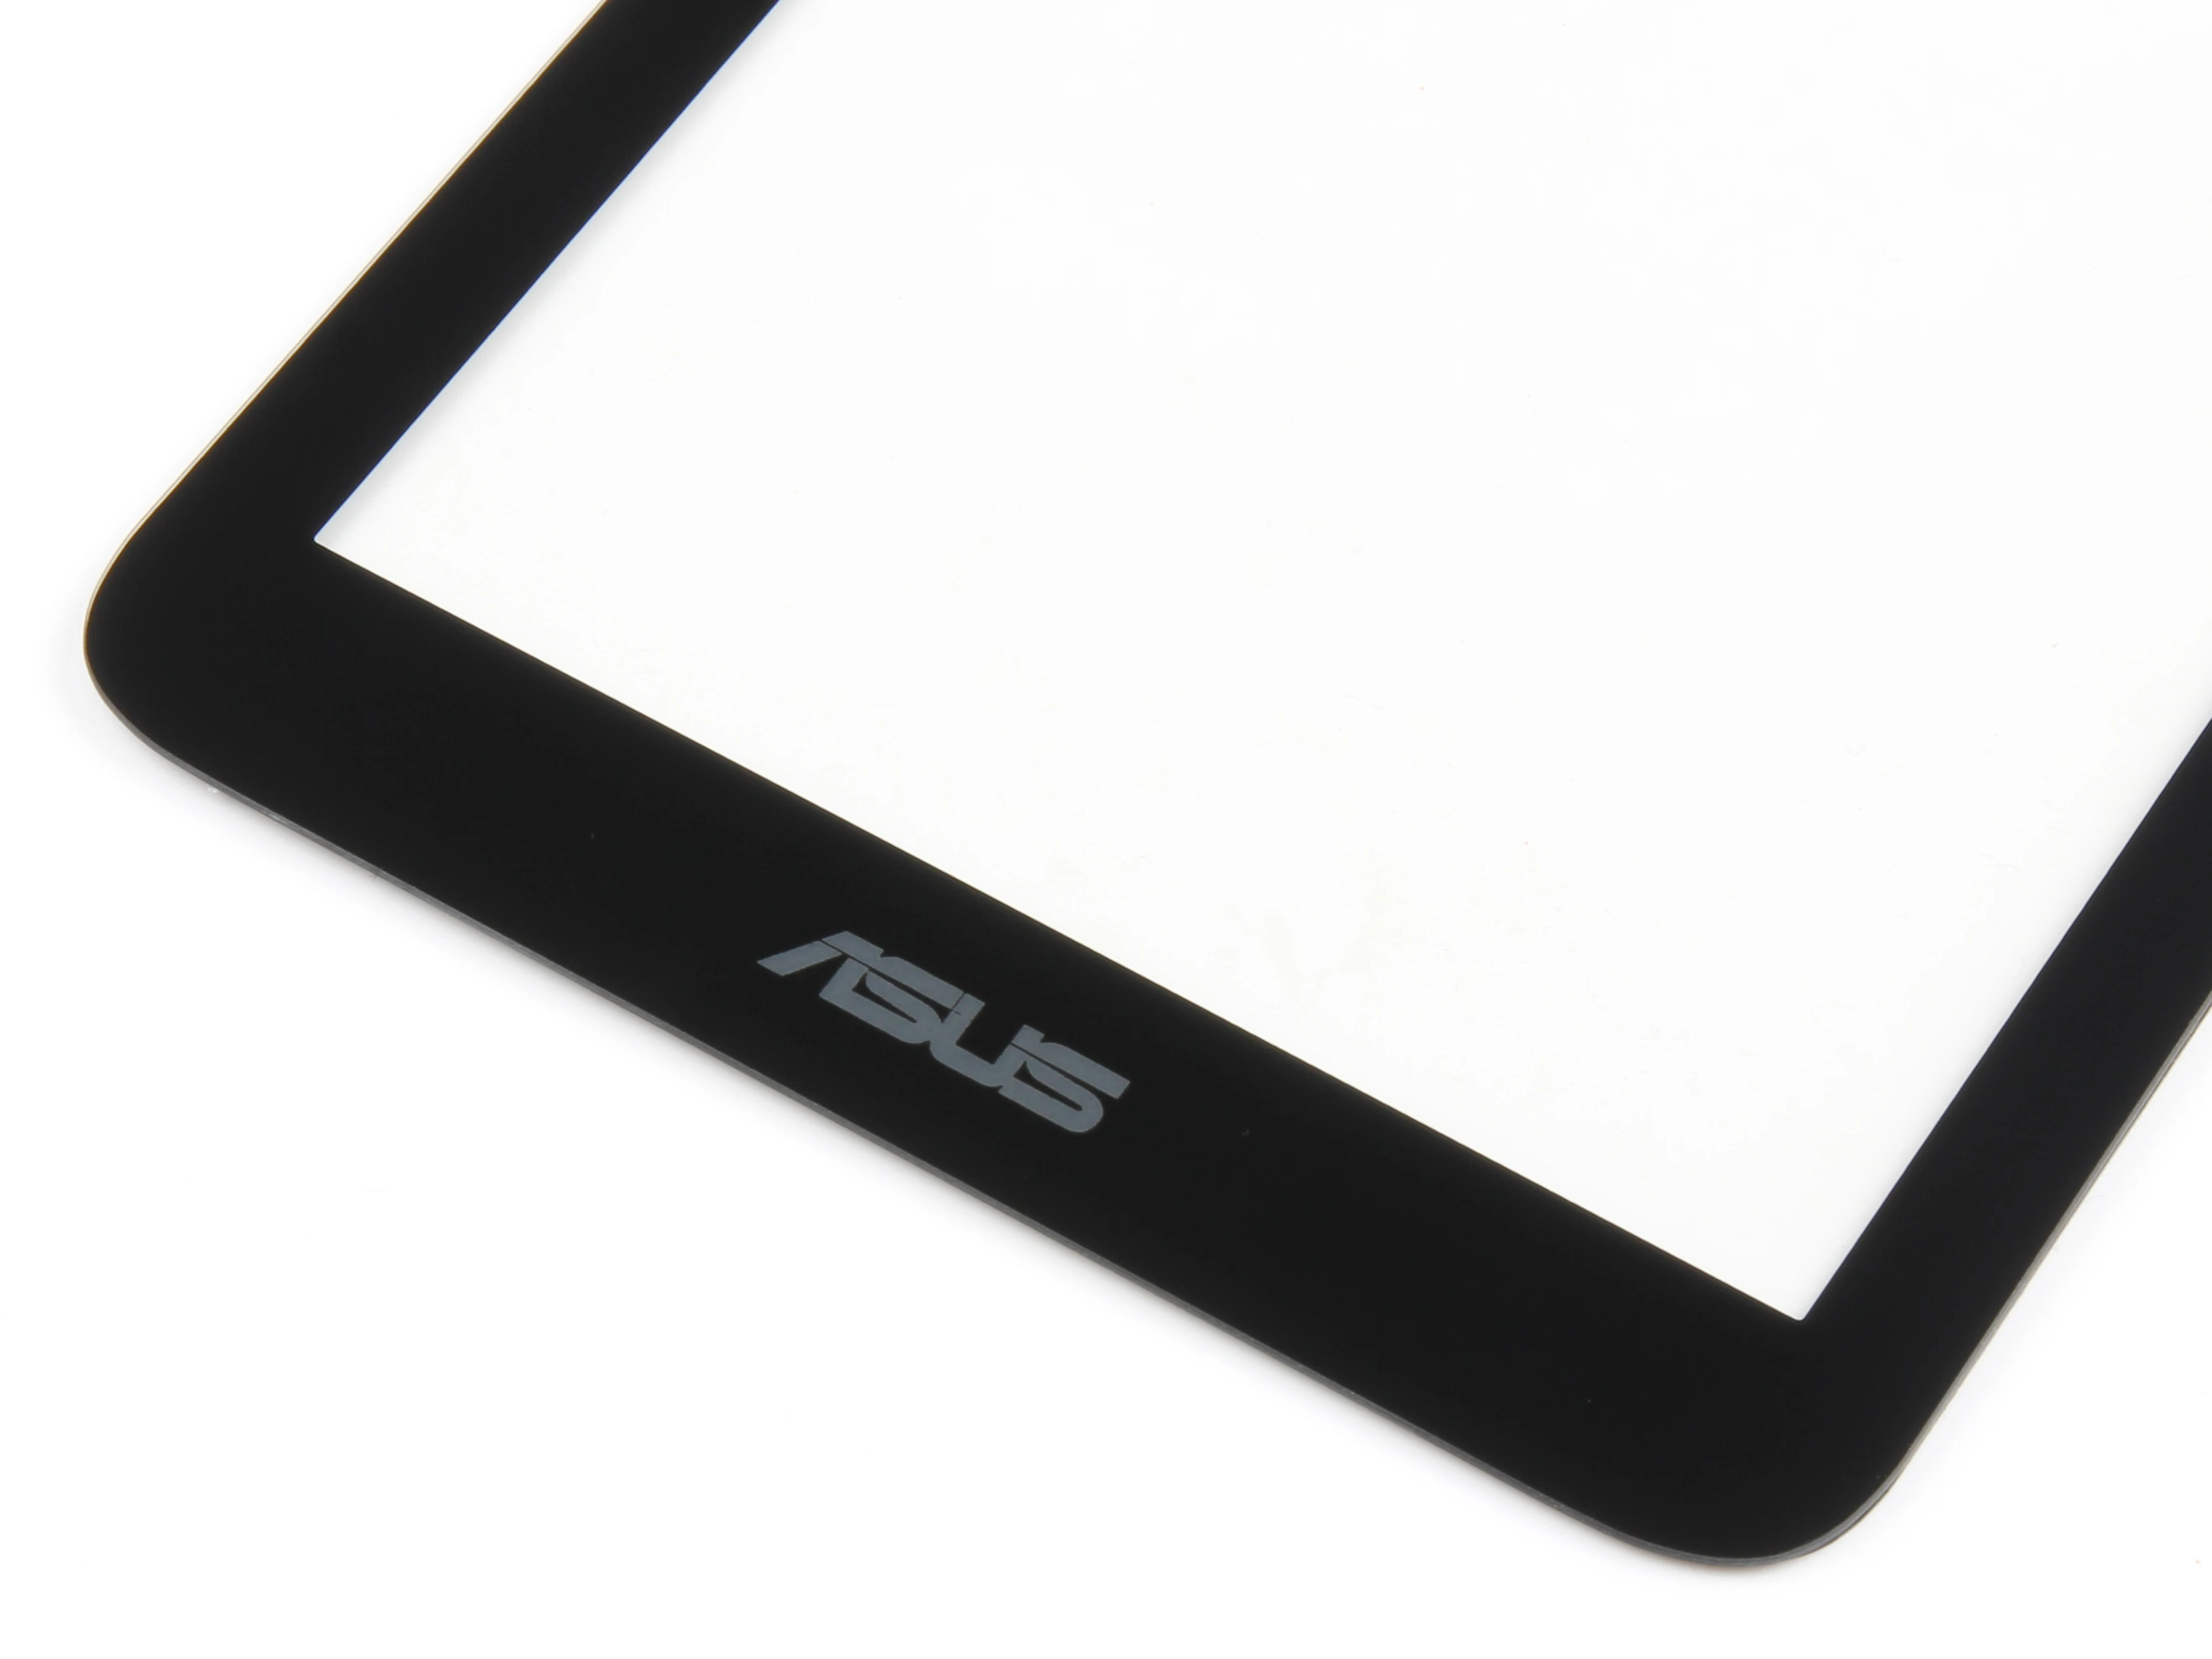 Для Asus Memo Pad 7 ME170 ME170C K012 Сенсорный экран Панель планшета Стекло объектив Сенсор ремонт Запчасти для авто